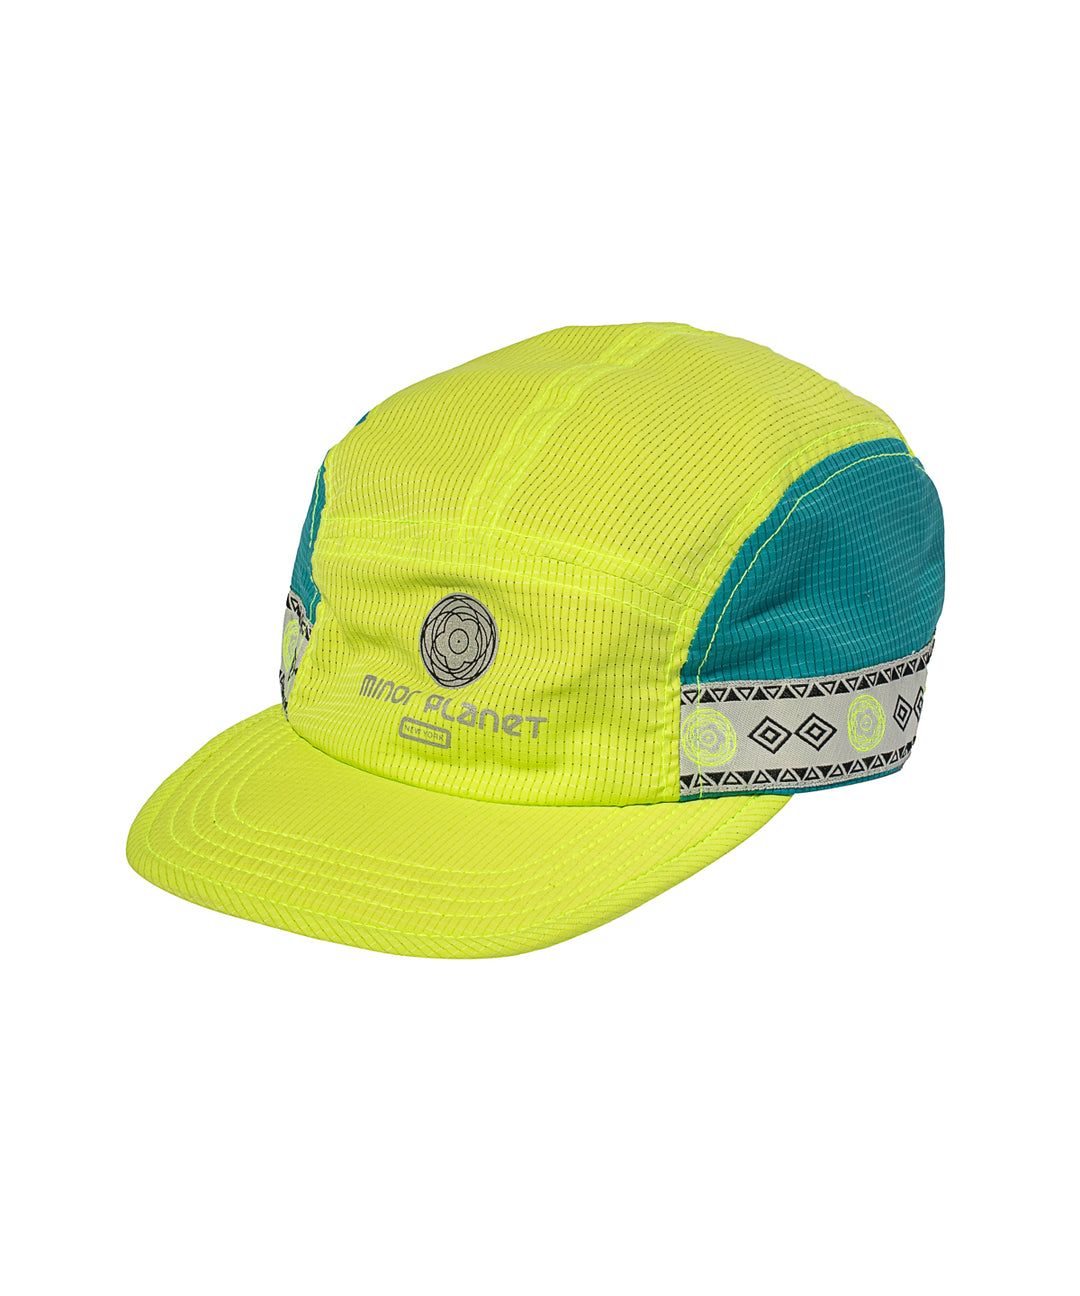 5 PANEL RUN CAP- Bright Green